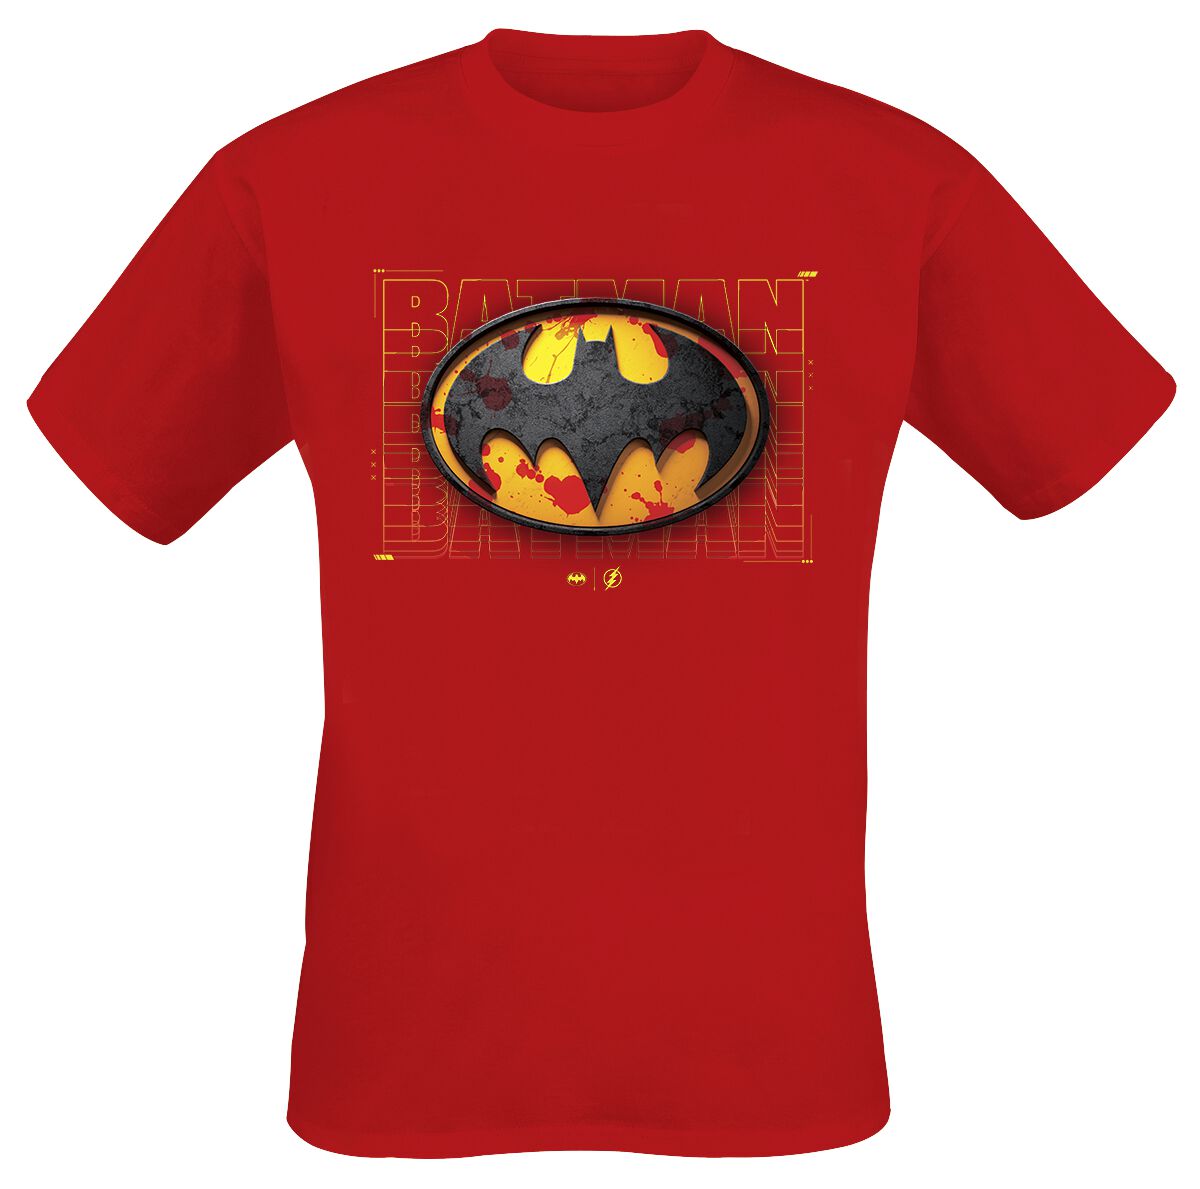 T-Shirt Manches courtes de Flash - Batman - Red Splatter - S à XXL - pour Homme - rouge